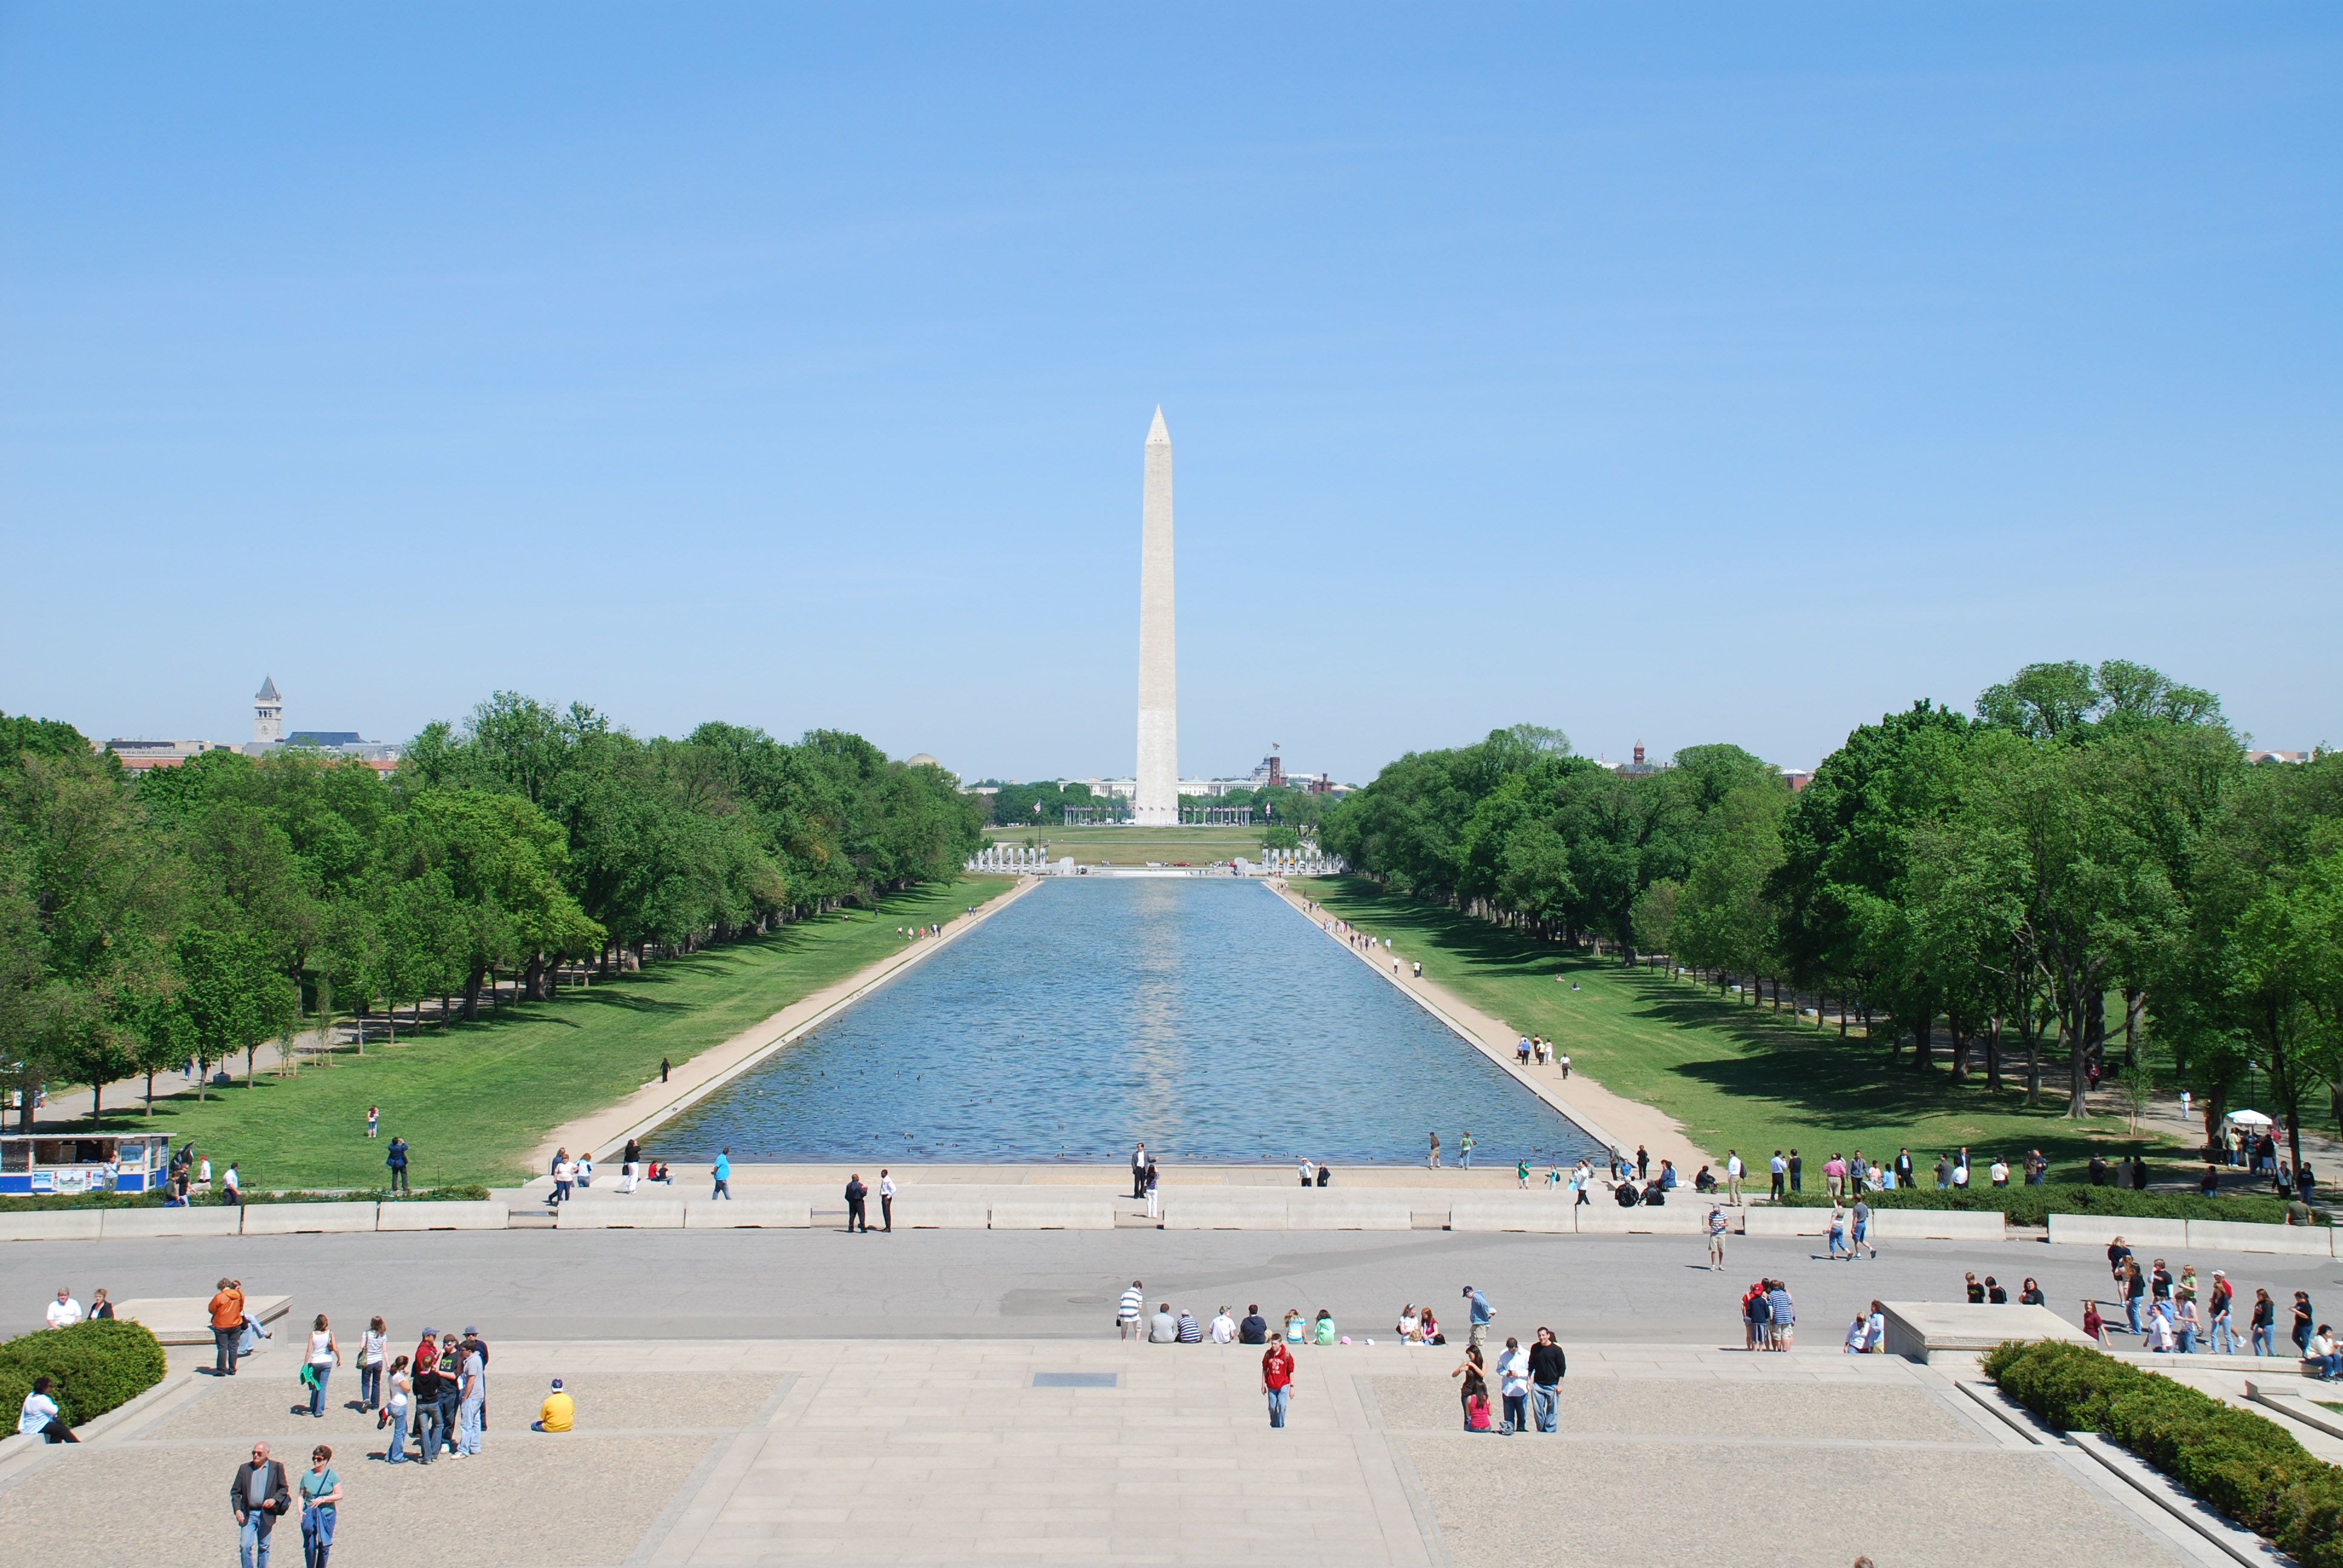 Washington Monument, Reflecting Pool, National Mall, Travel